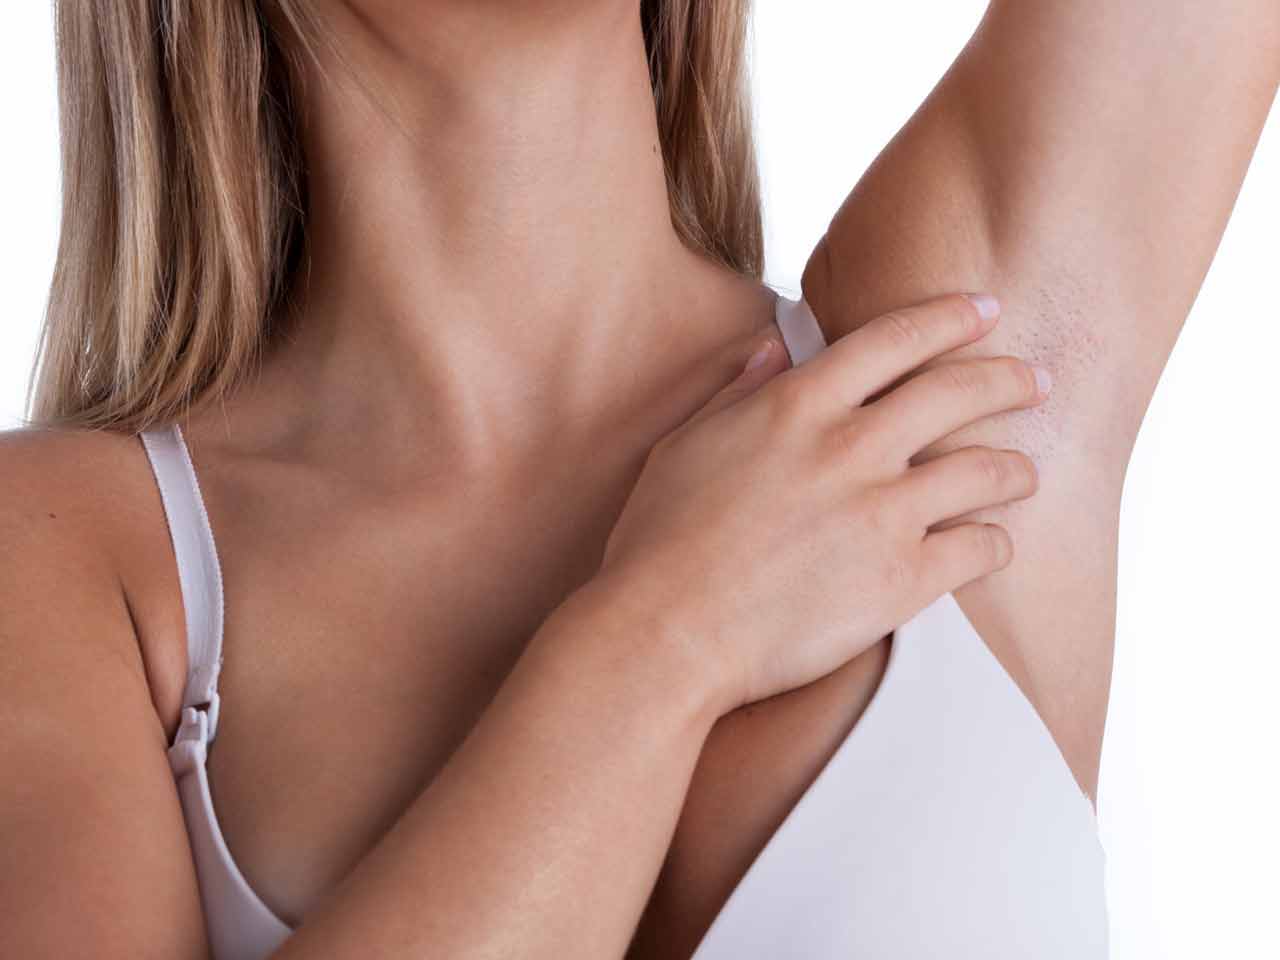 Лимфаденит воспаление лимфоузлов на шее в паху под мышкой - причины симптомы лечение